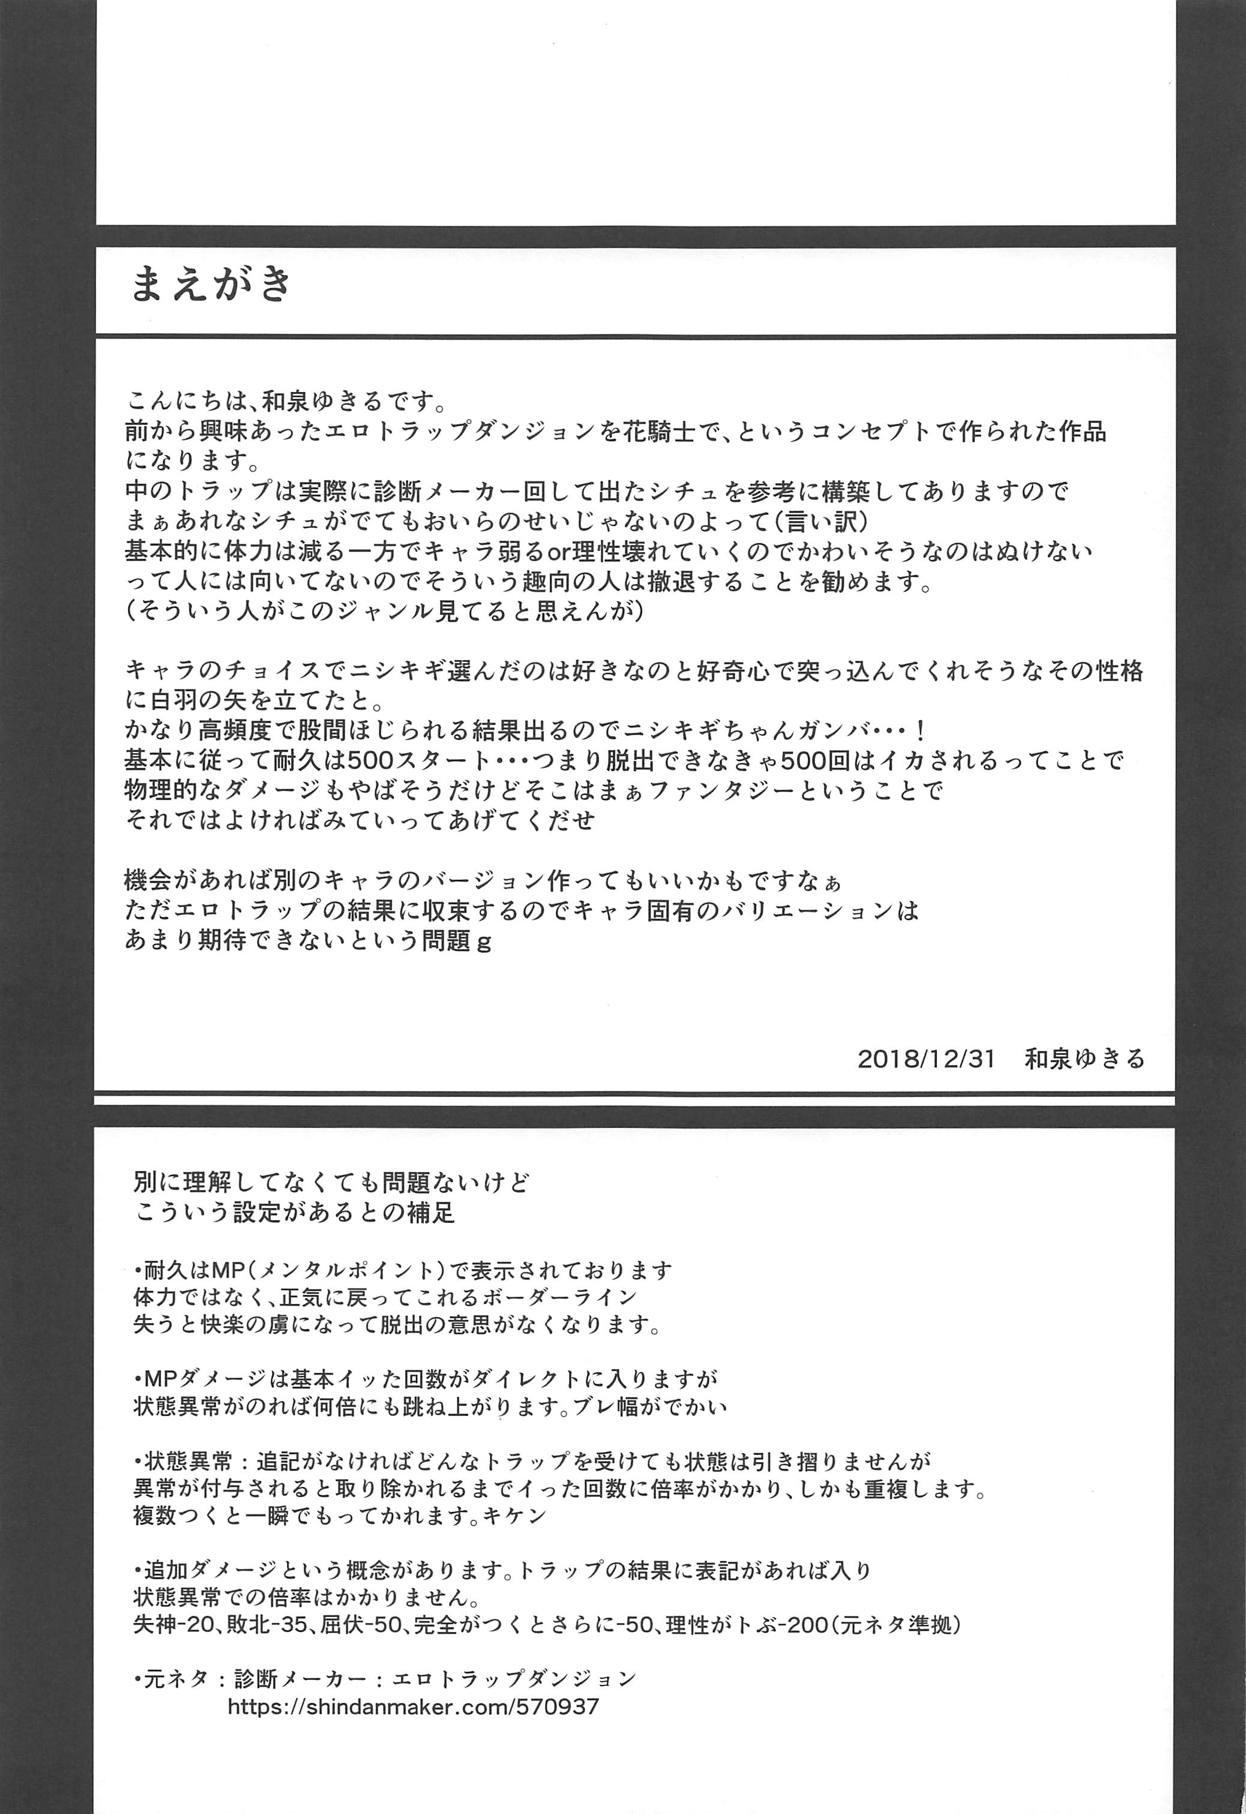 Anal Play Nishikigi VS Ero Trap D - Flower knight girl Rub - Page 2